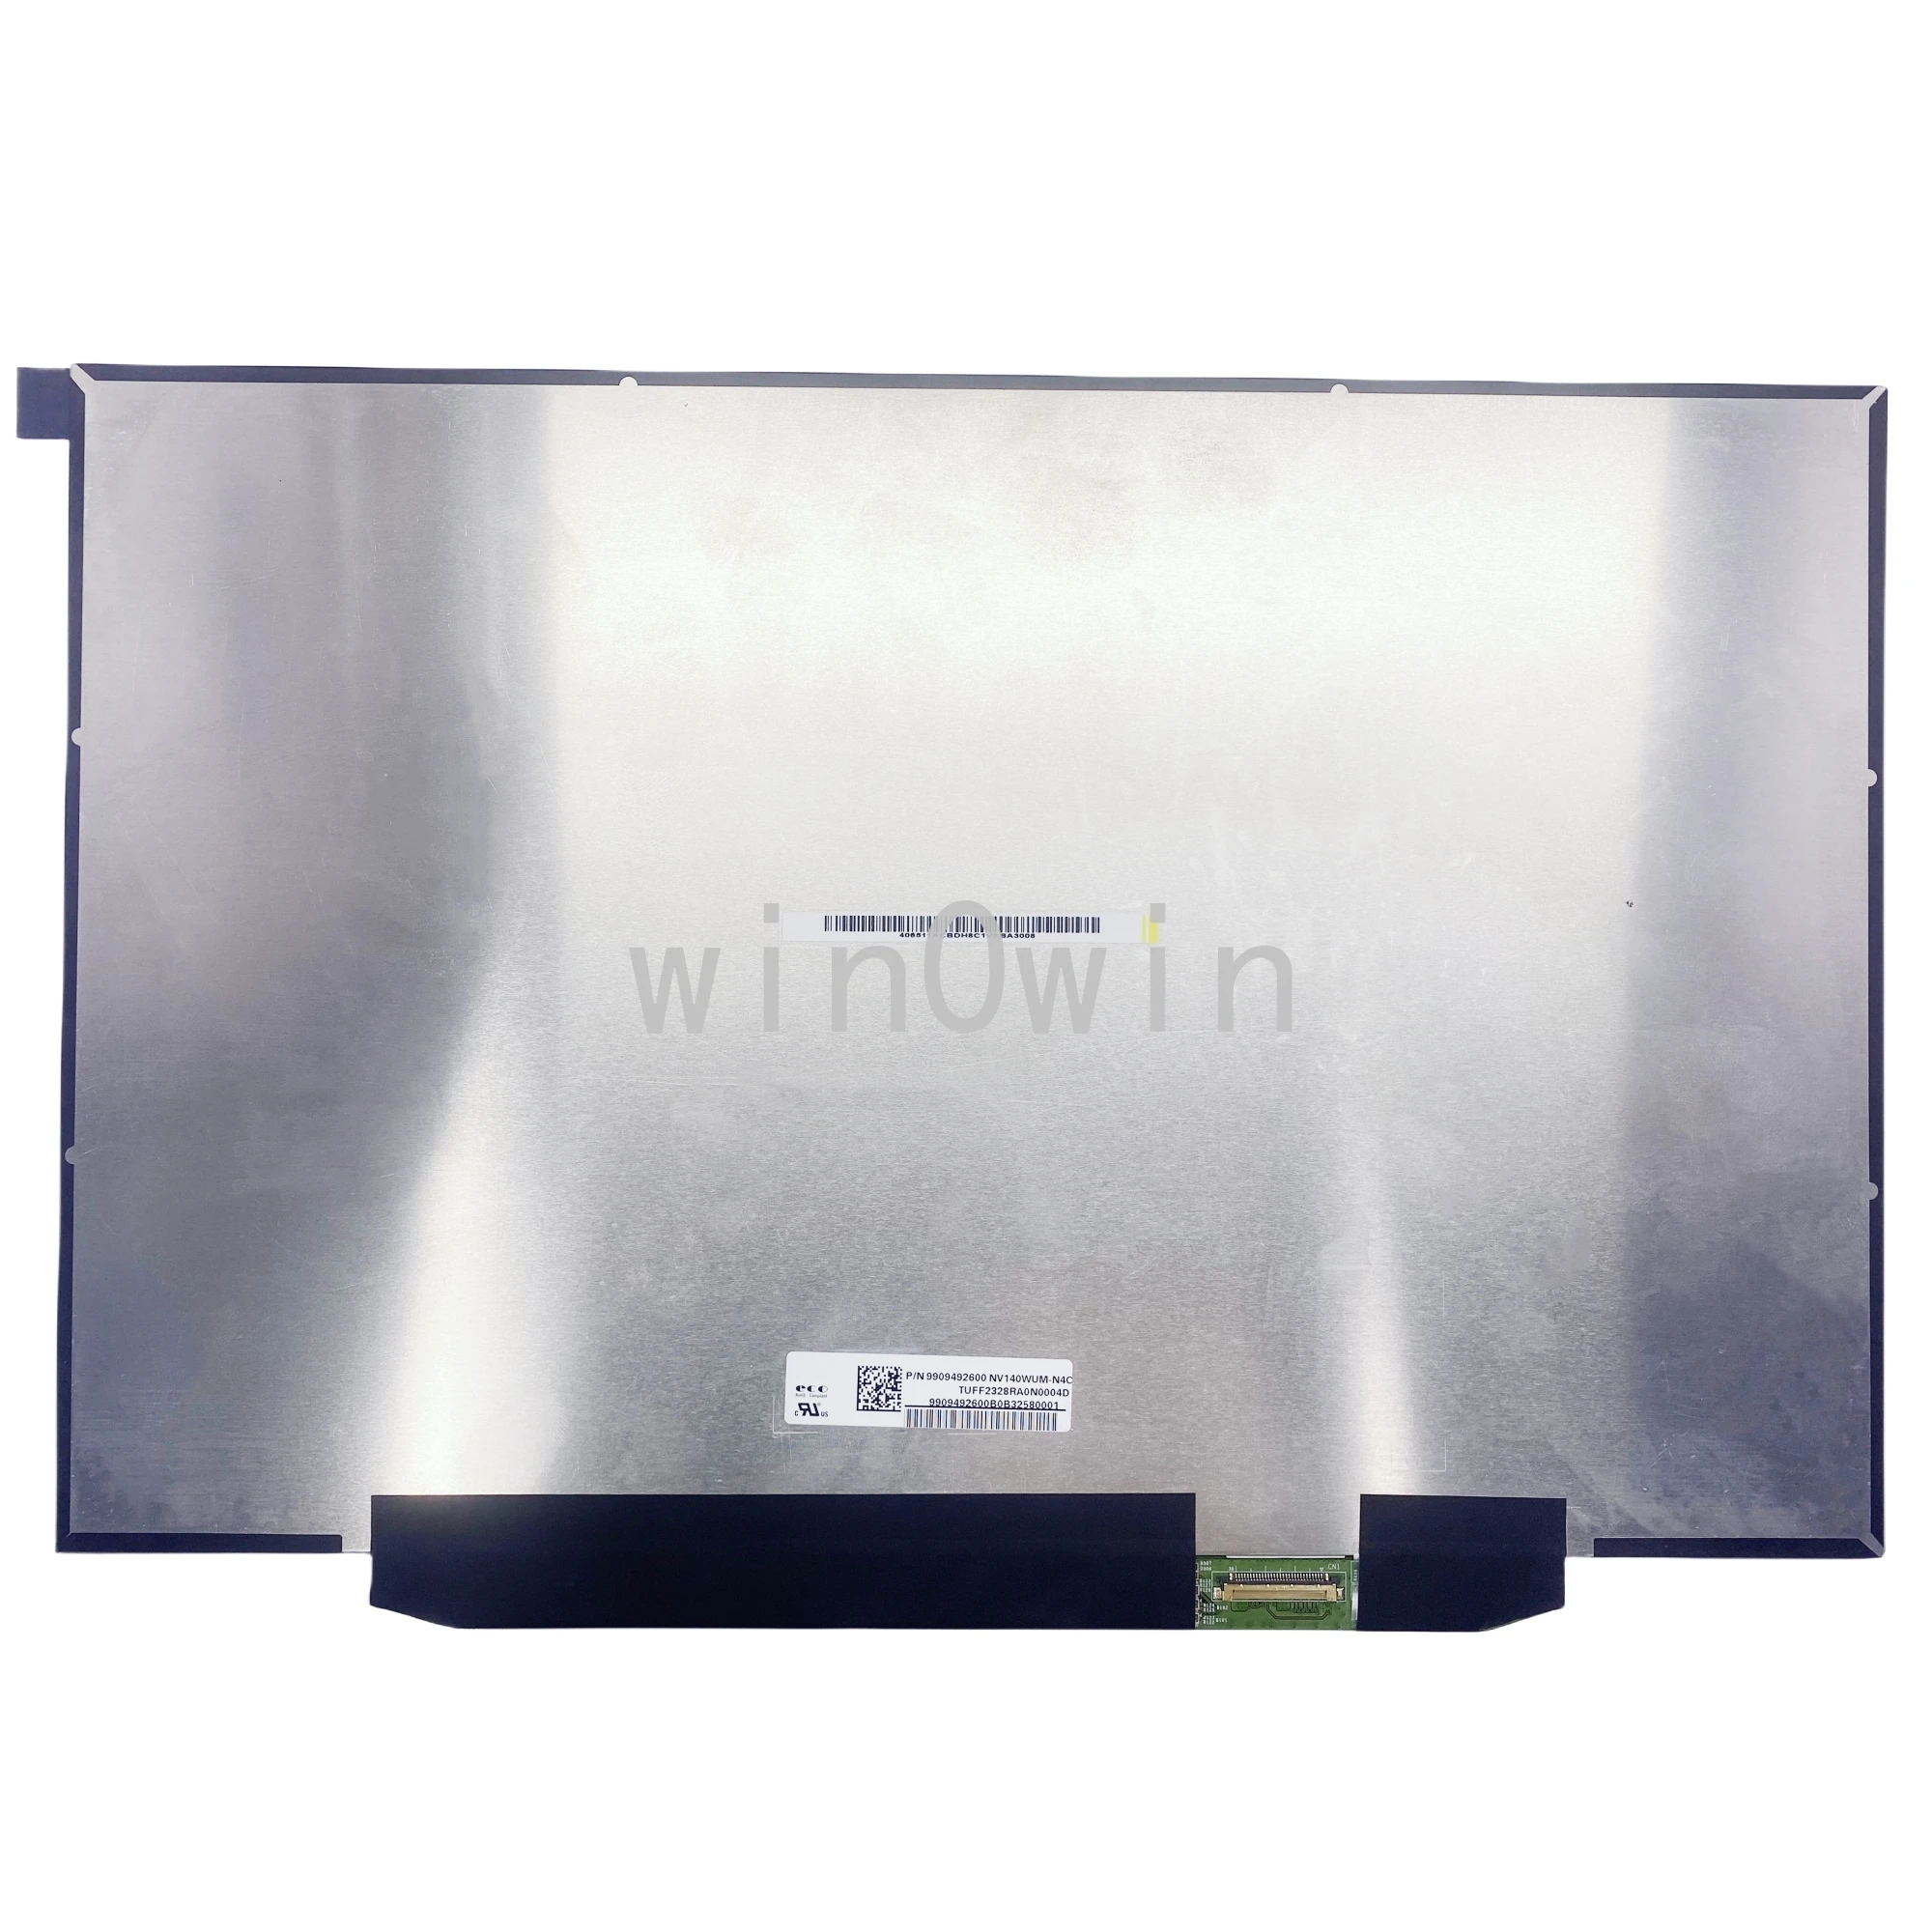 NV140WUM-N4C ekran LCD do laptopa panelu część wymienna matrycy o przekątnej 14.0 cali 1920x1200 30 pinów